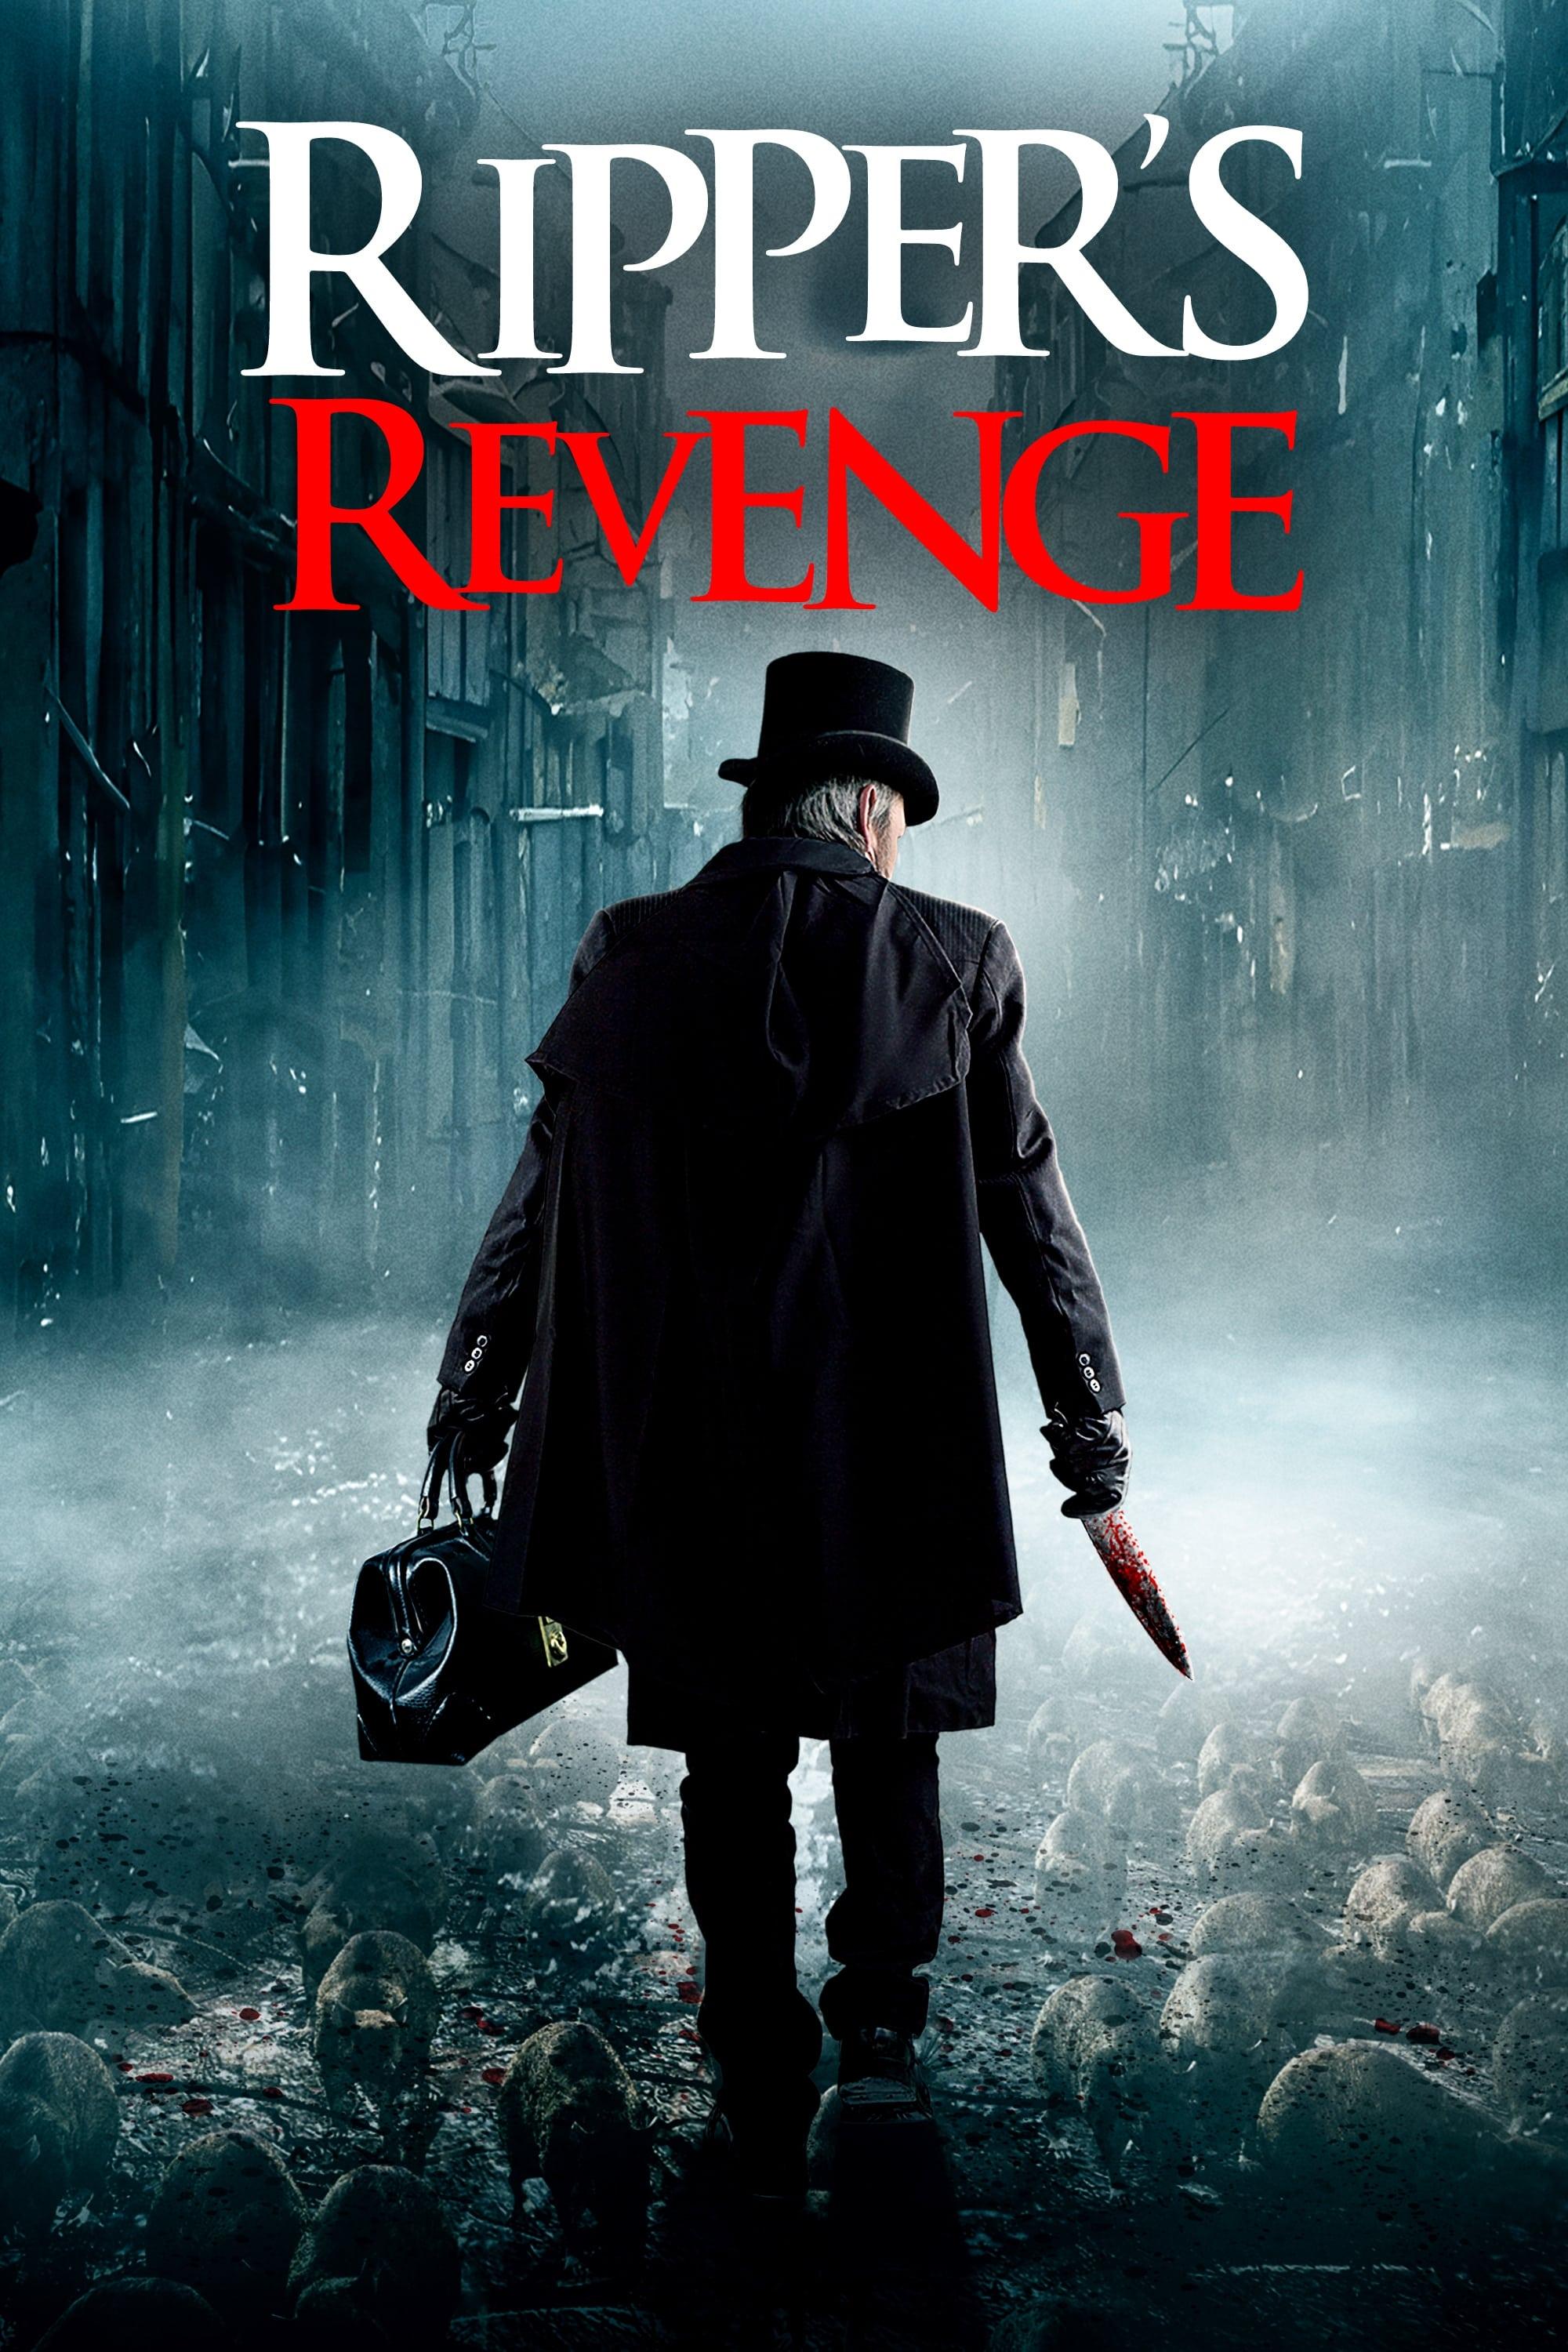 Ripper's Revenge poster